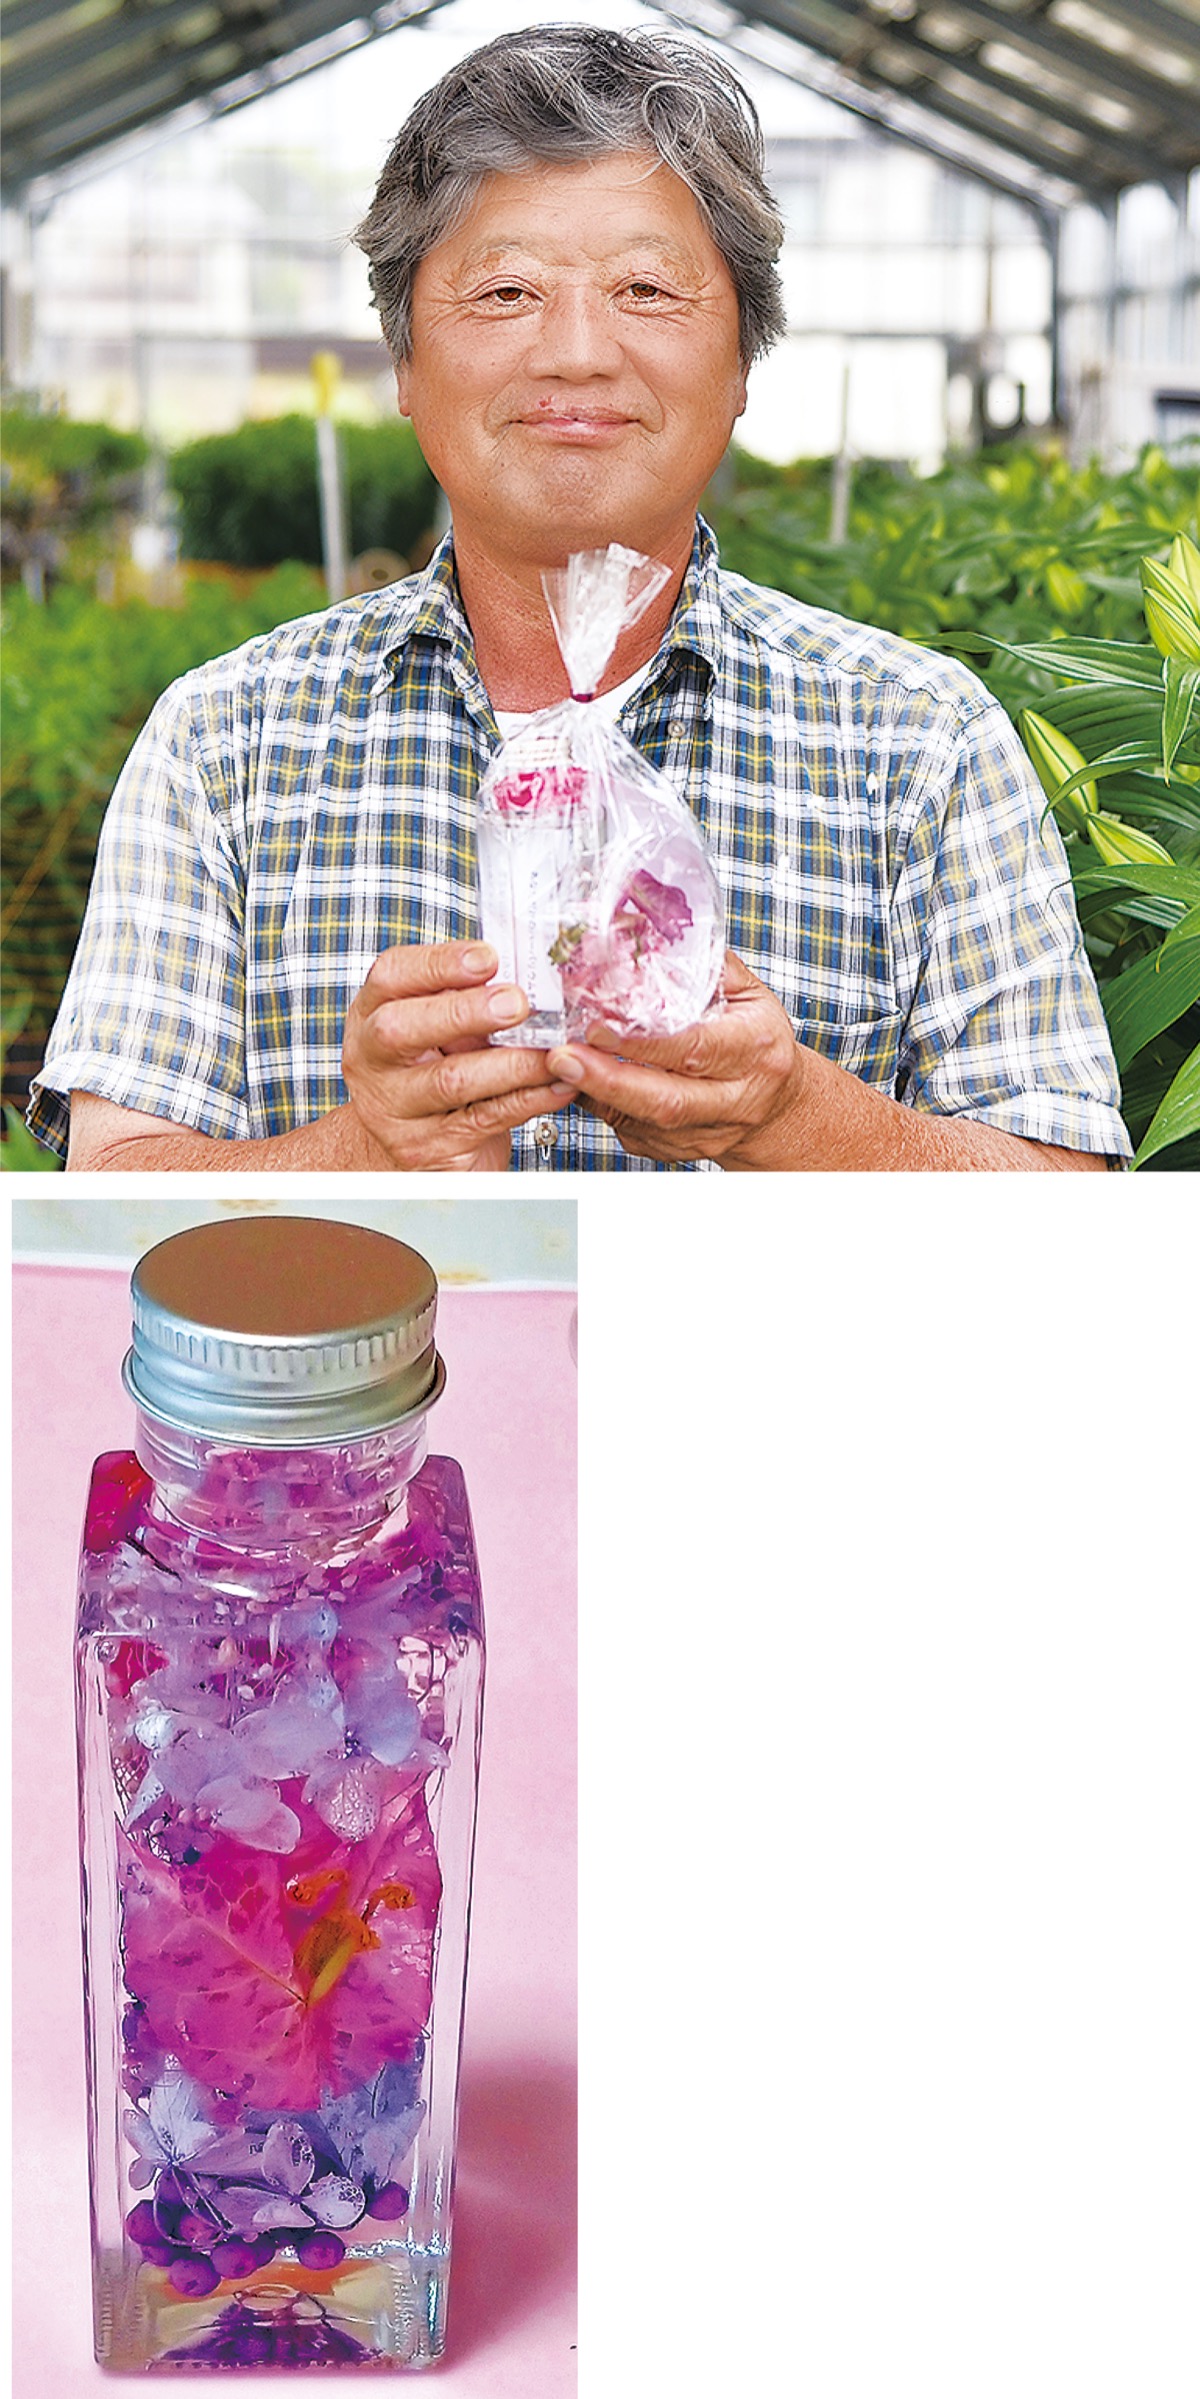 ハーバリウム」楽しんで 地元の花農家が販売 | 藤沢 | タウンニュース